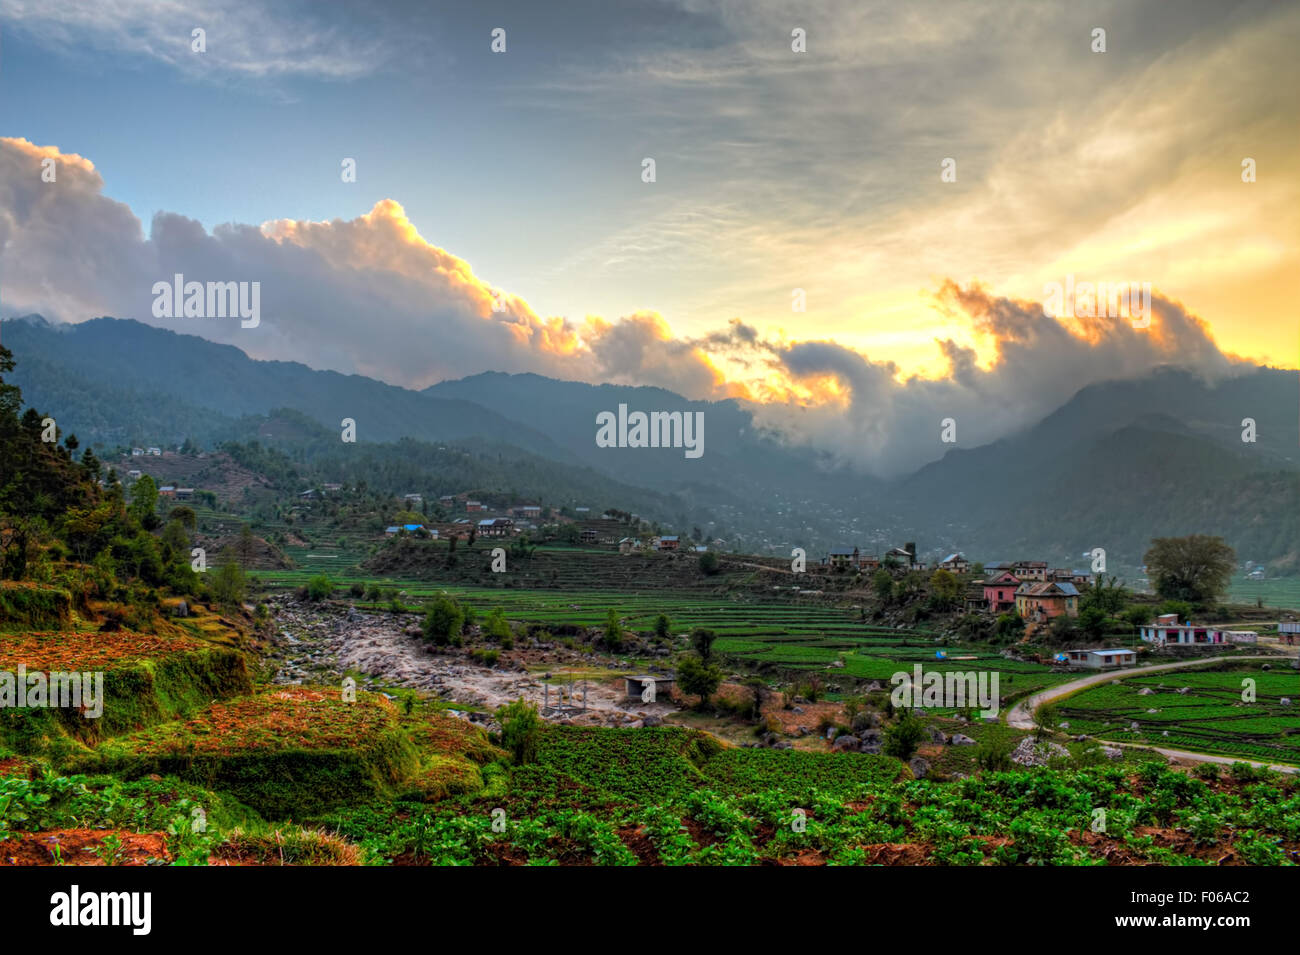 Nuvole sulla montagna in un ambiente collinare rurale regione delle Highlands in Nepal Foto Stock